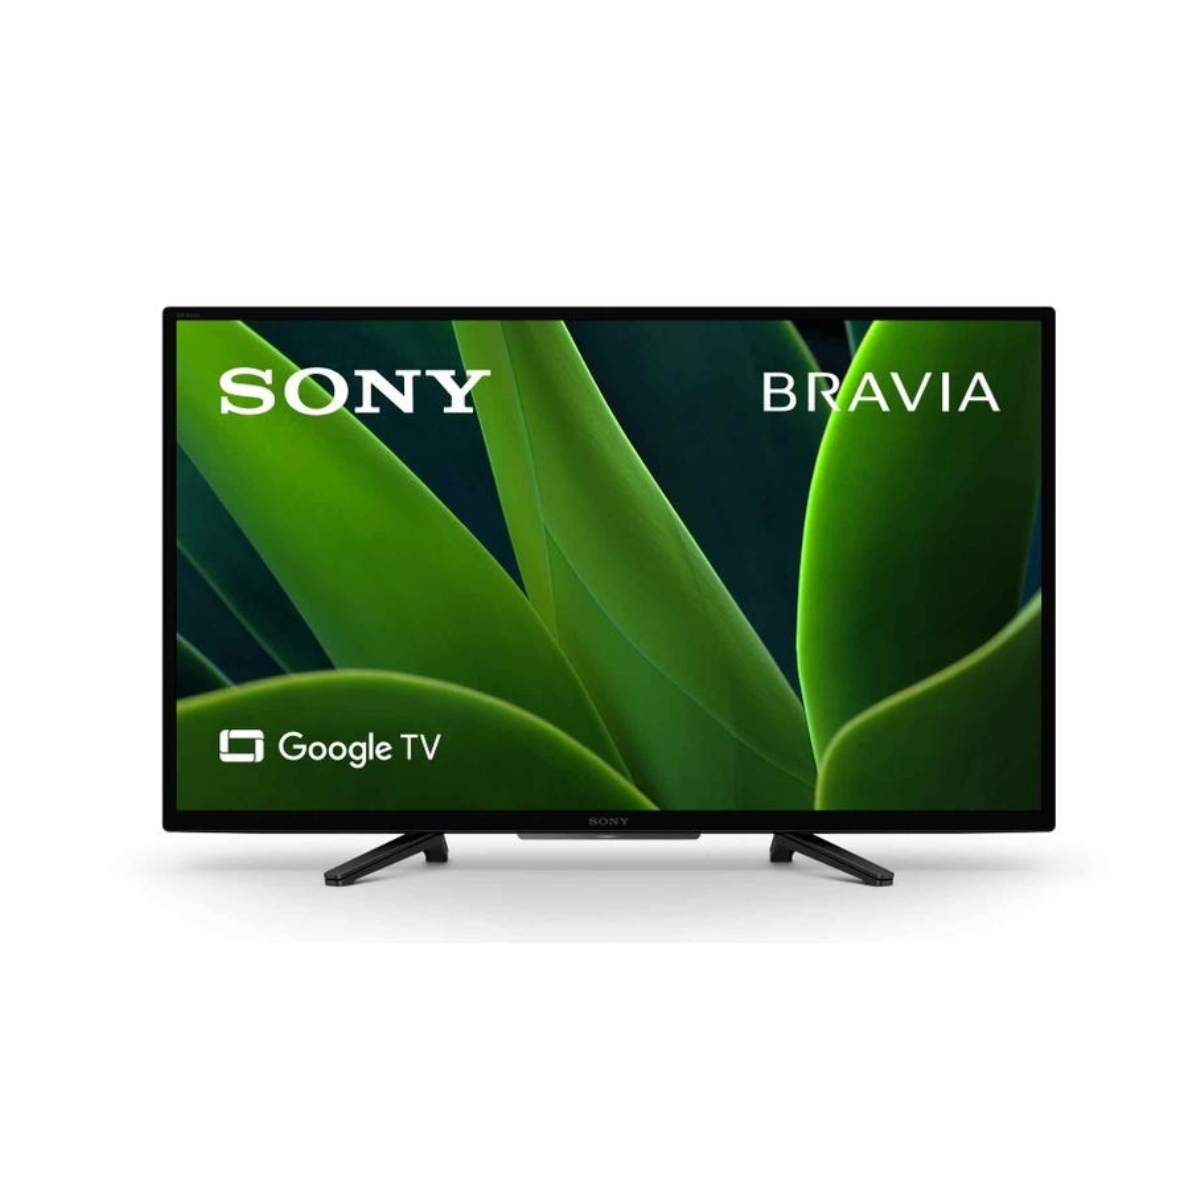 Sony Bravia TV 32" LED